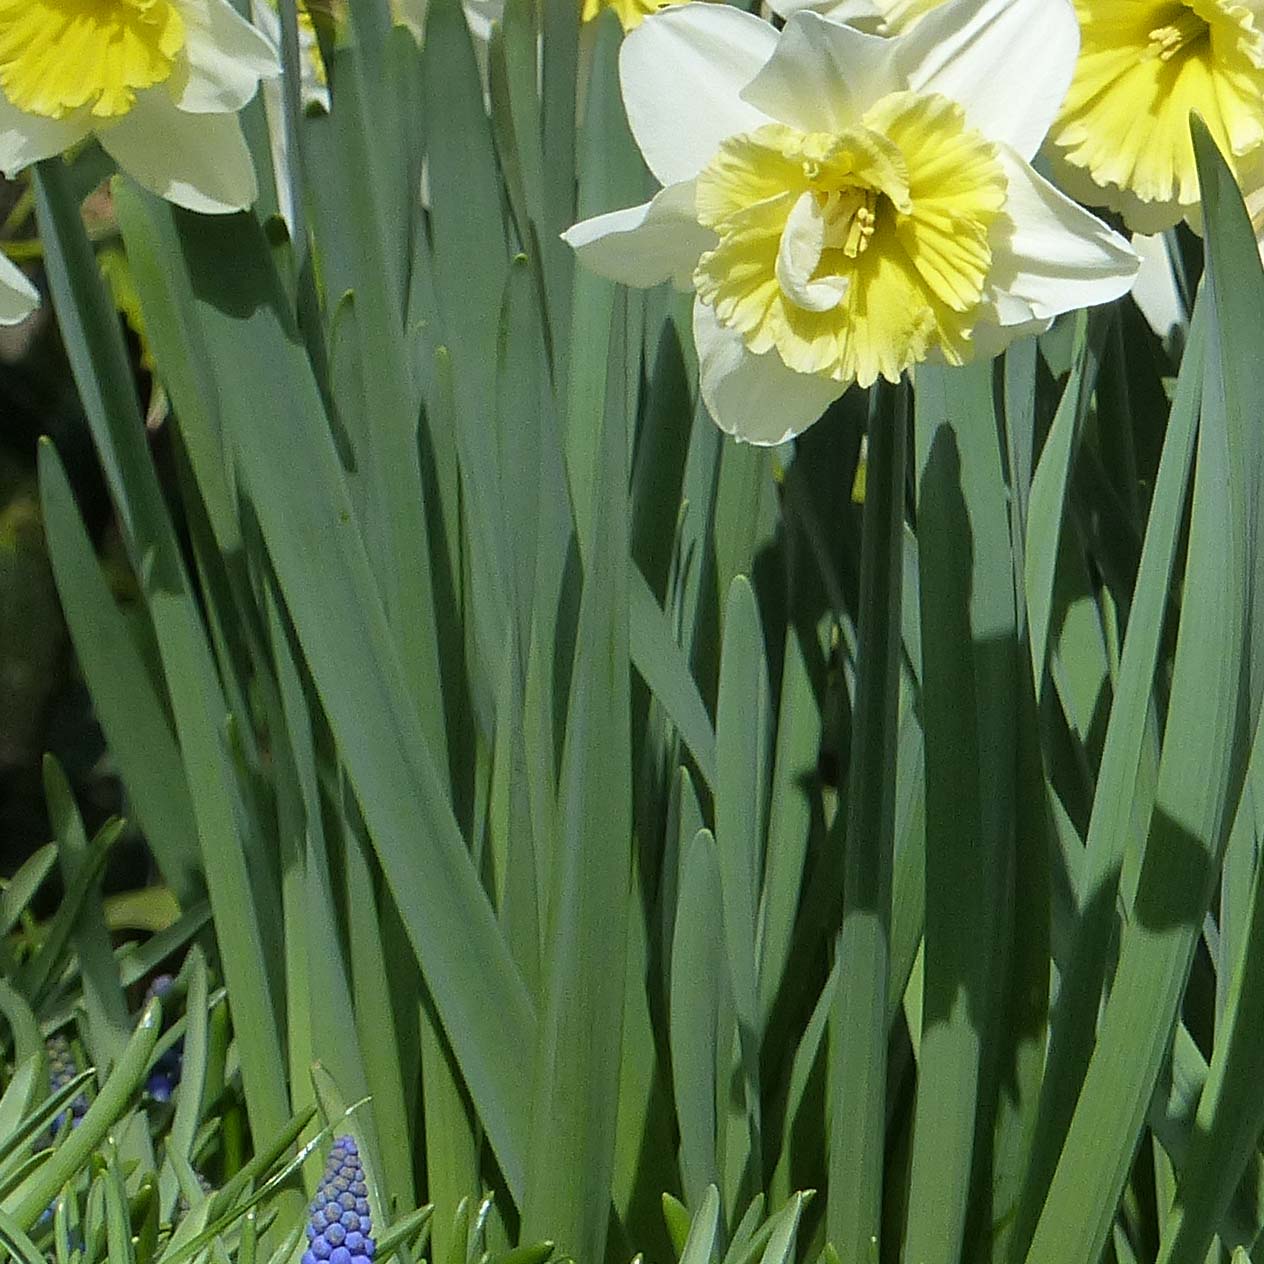 Narcissus Ice Follies - Narcisse à grande couronne jaune clair, corolle  blanche. Un grand classique !